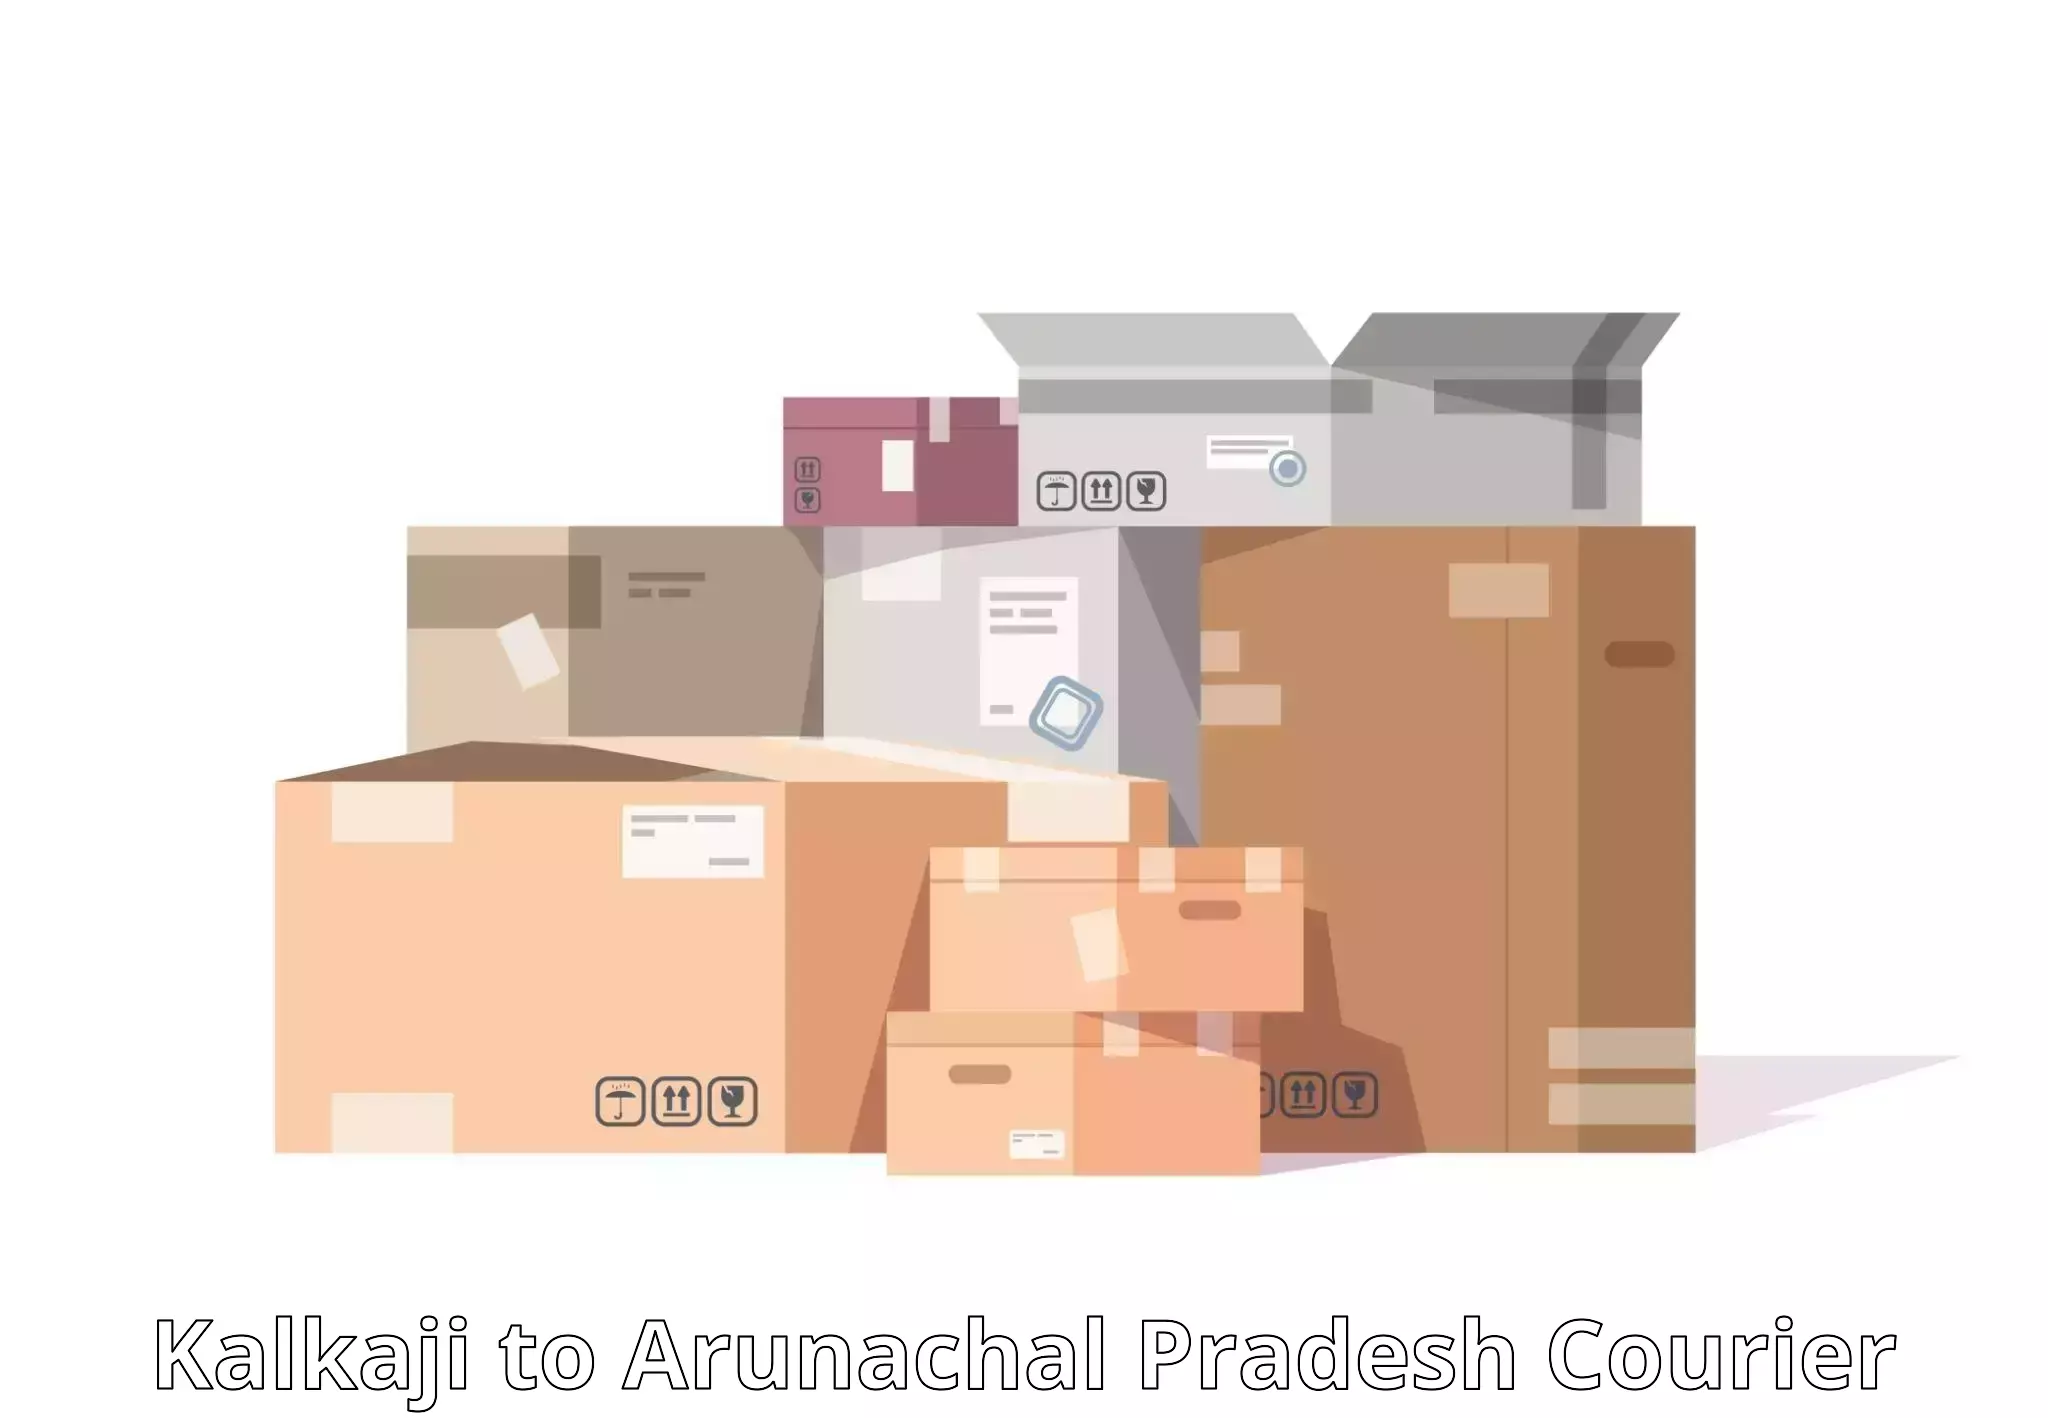 Easy access courier services Kalkaji to Tezu